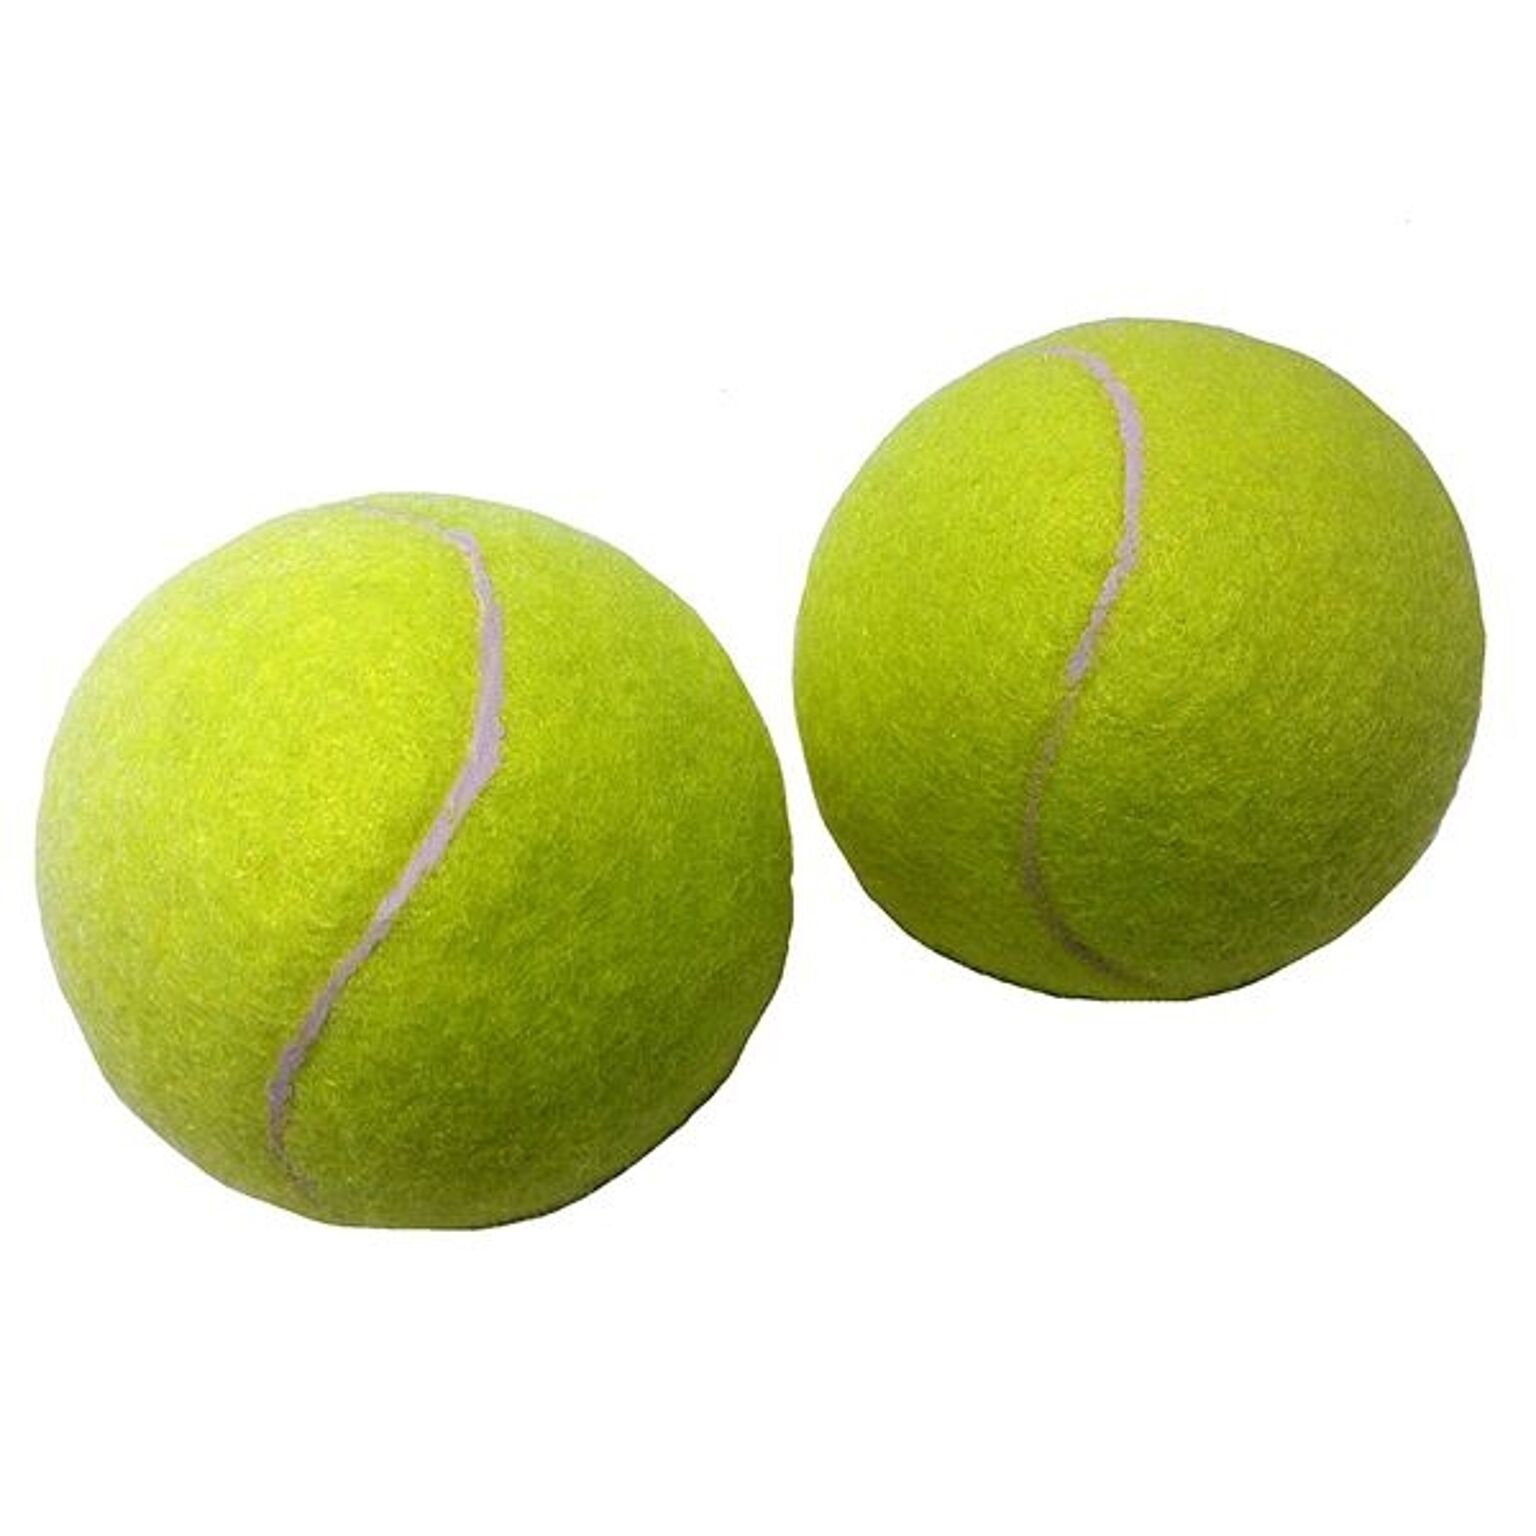 硬式テニスボール 2P 【×50パック】